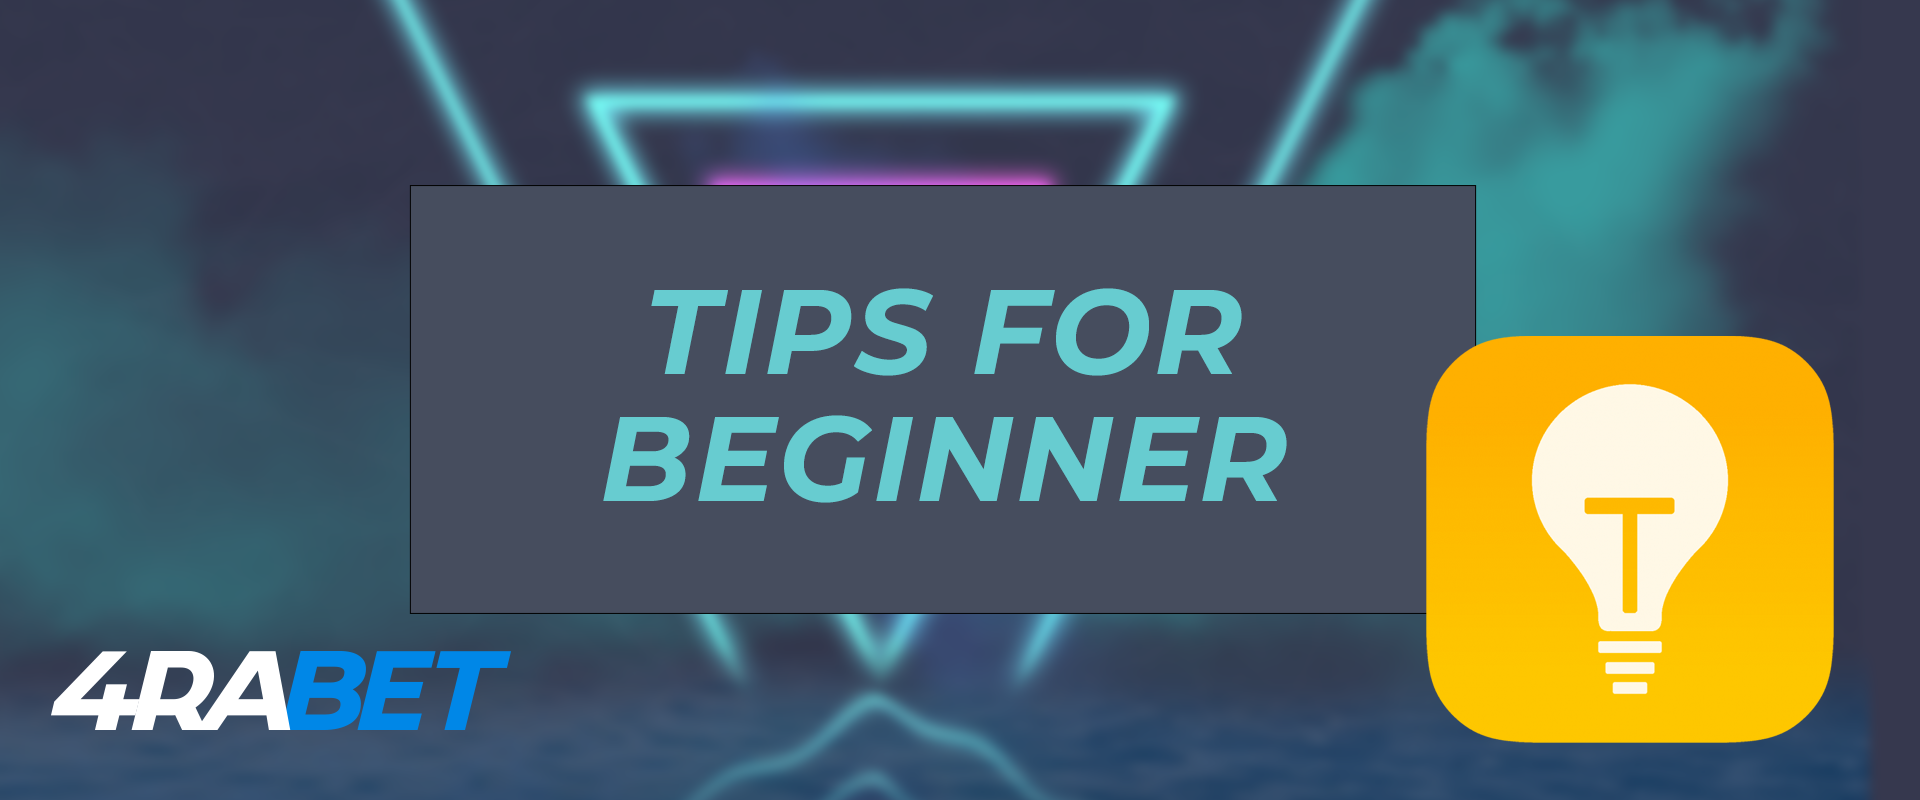 All tips for beginner on 4rabet.